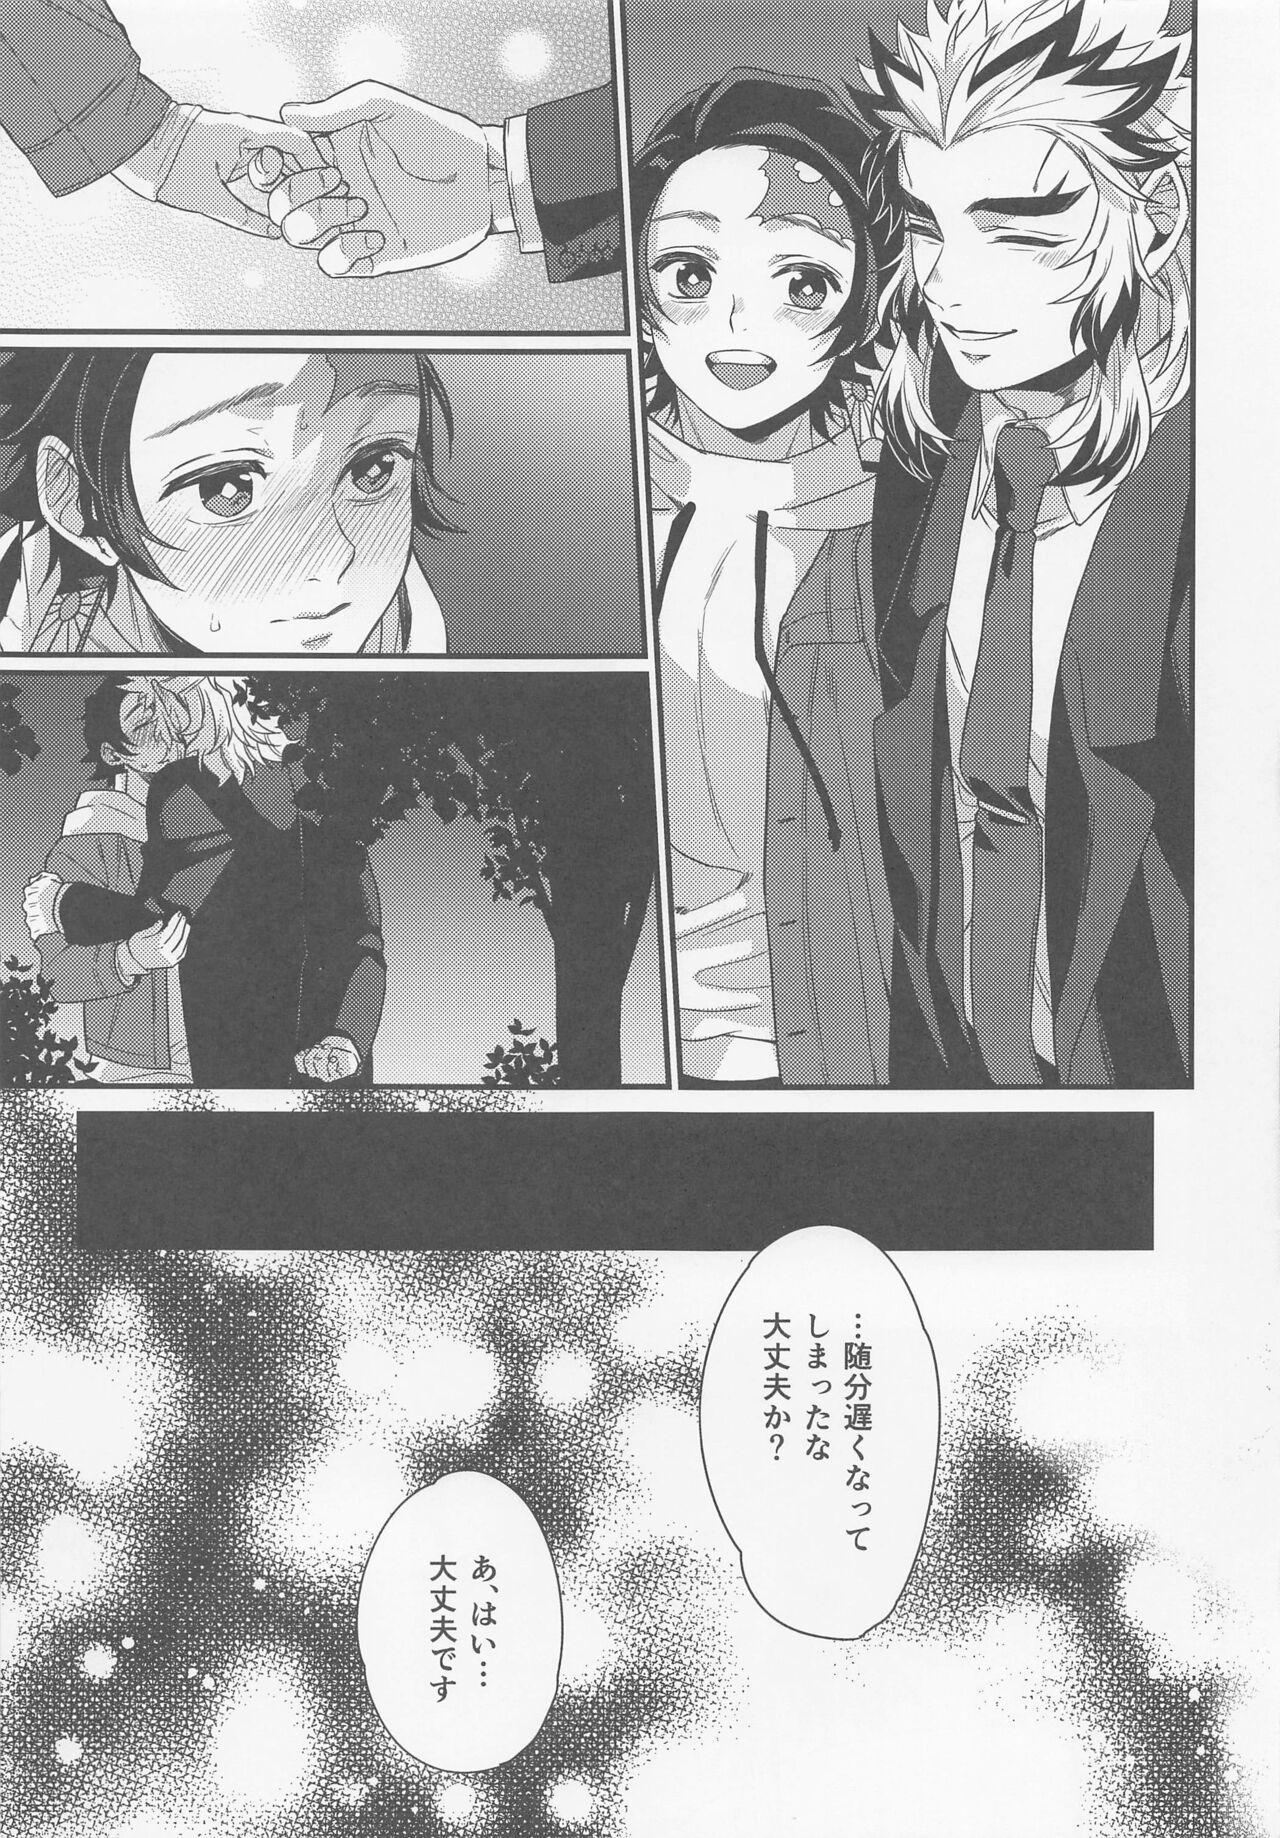 Small Tits sukida、shonen、daisukida - Kimetsu no yaiba | demon slayer Gay Party - Page 5